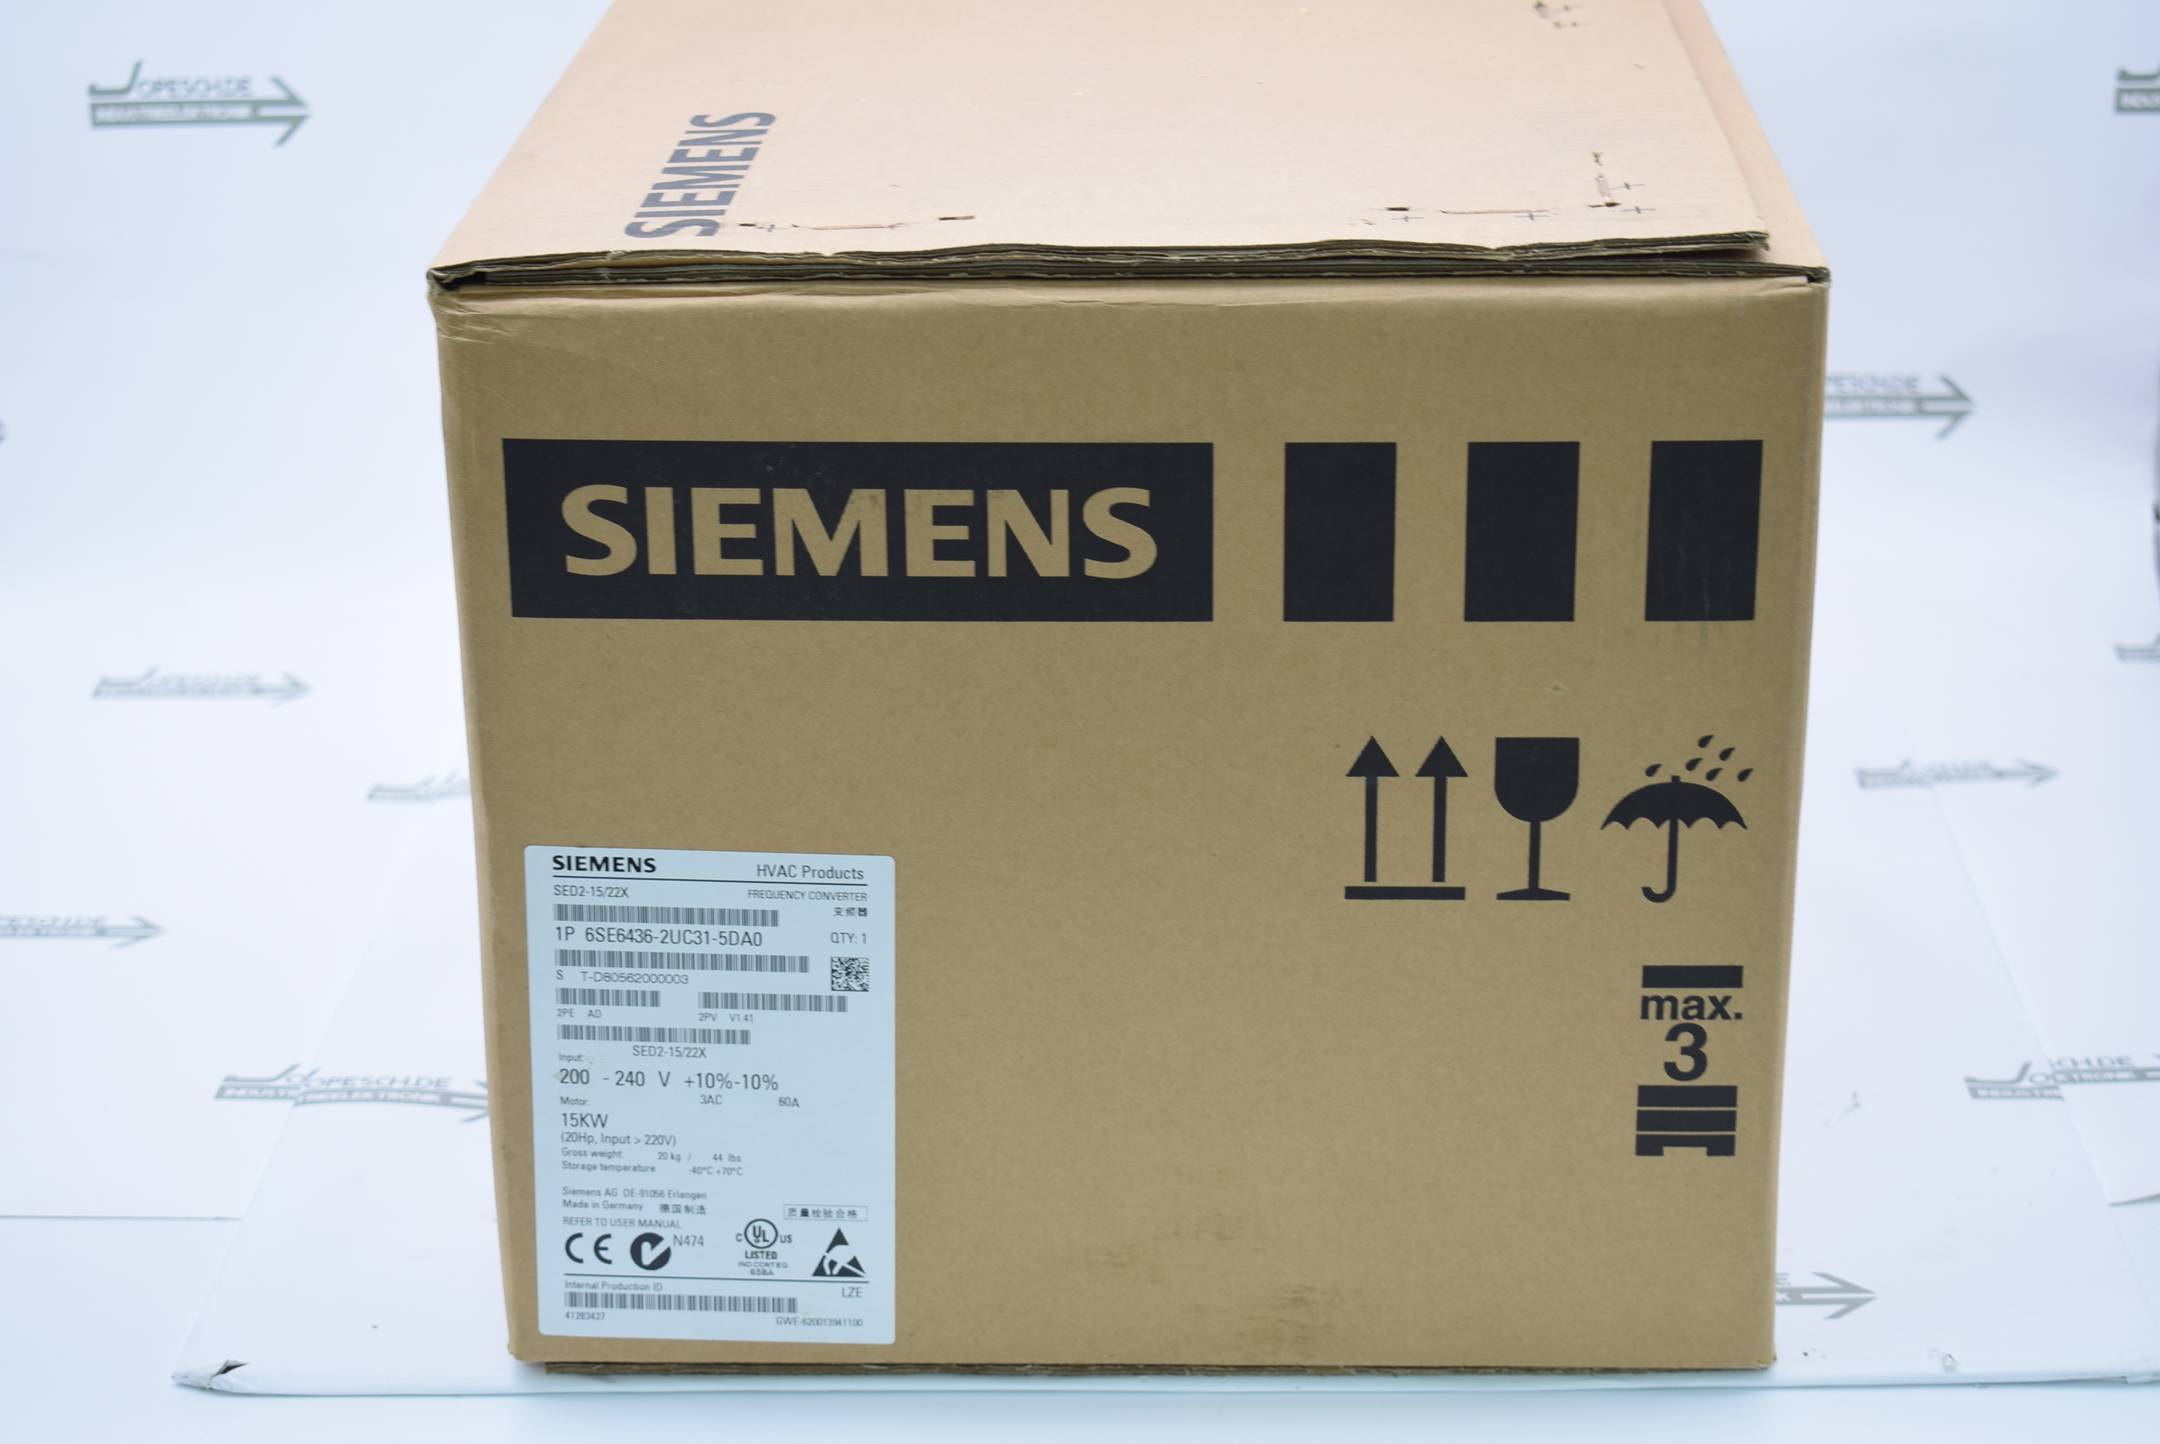 Siemens Frequenzumwandler 6SE6436-2UC31-5DA0 ( 6SE6 436-2UC31-5DA0 ) V.1.41